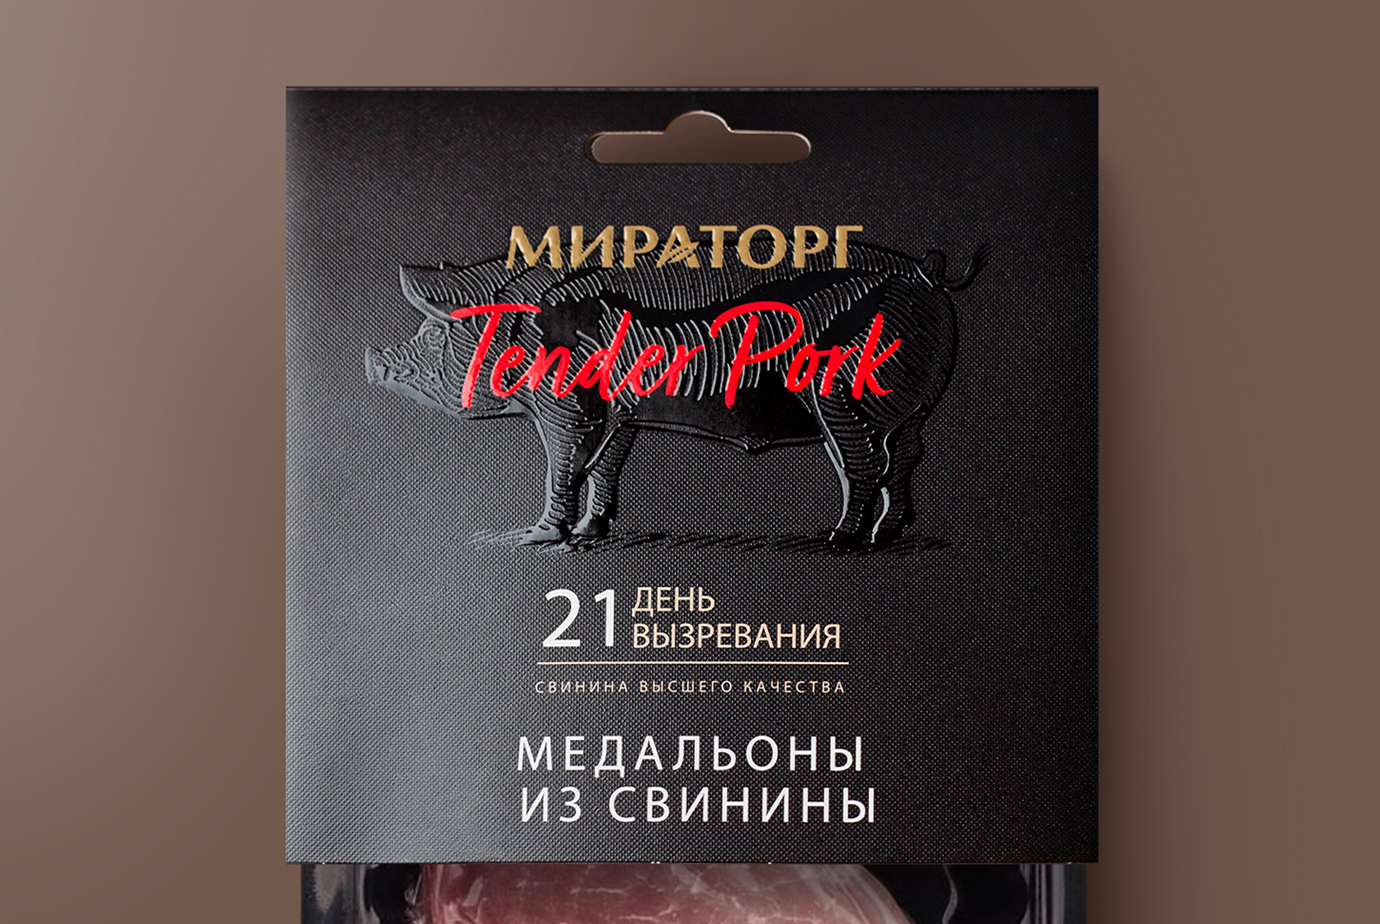 Декоративные особенности премиальных этикеток на примере свинины Tender Pork для компании Мираторг